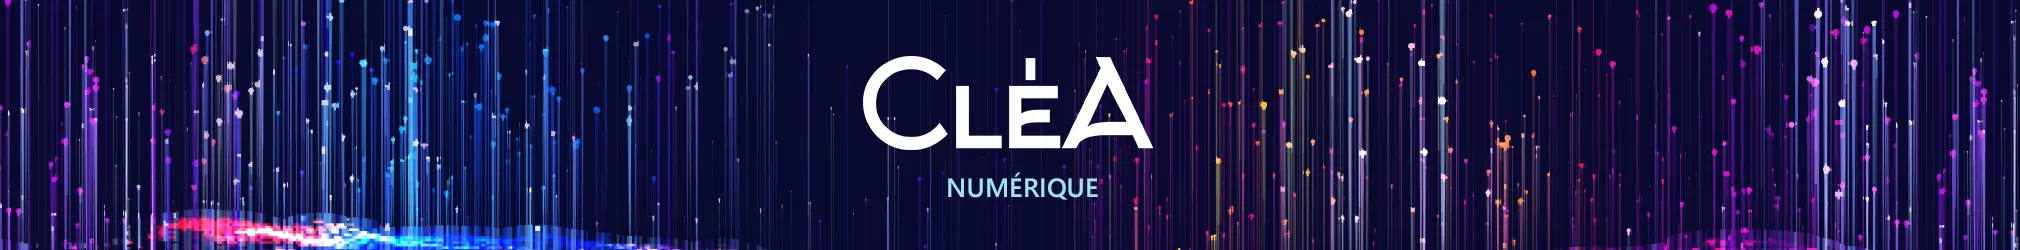 Formation CléA Numérique